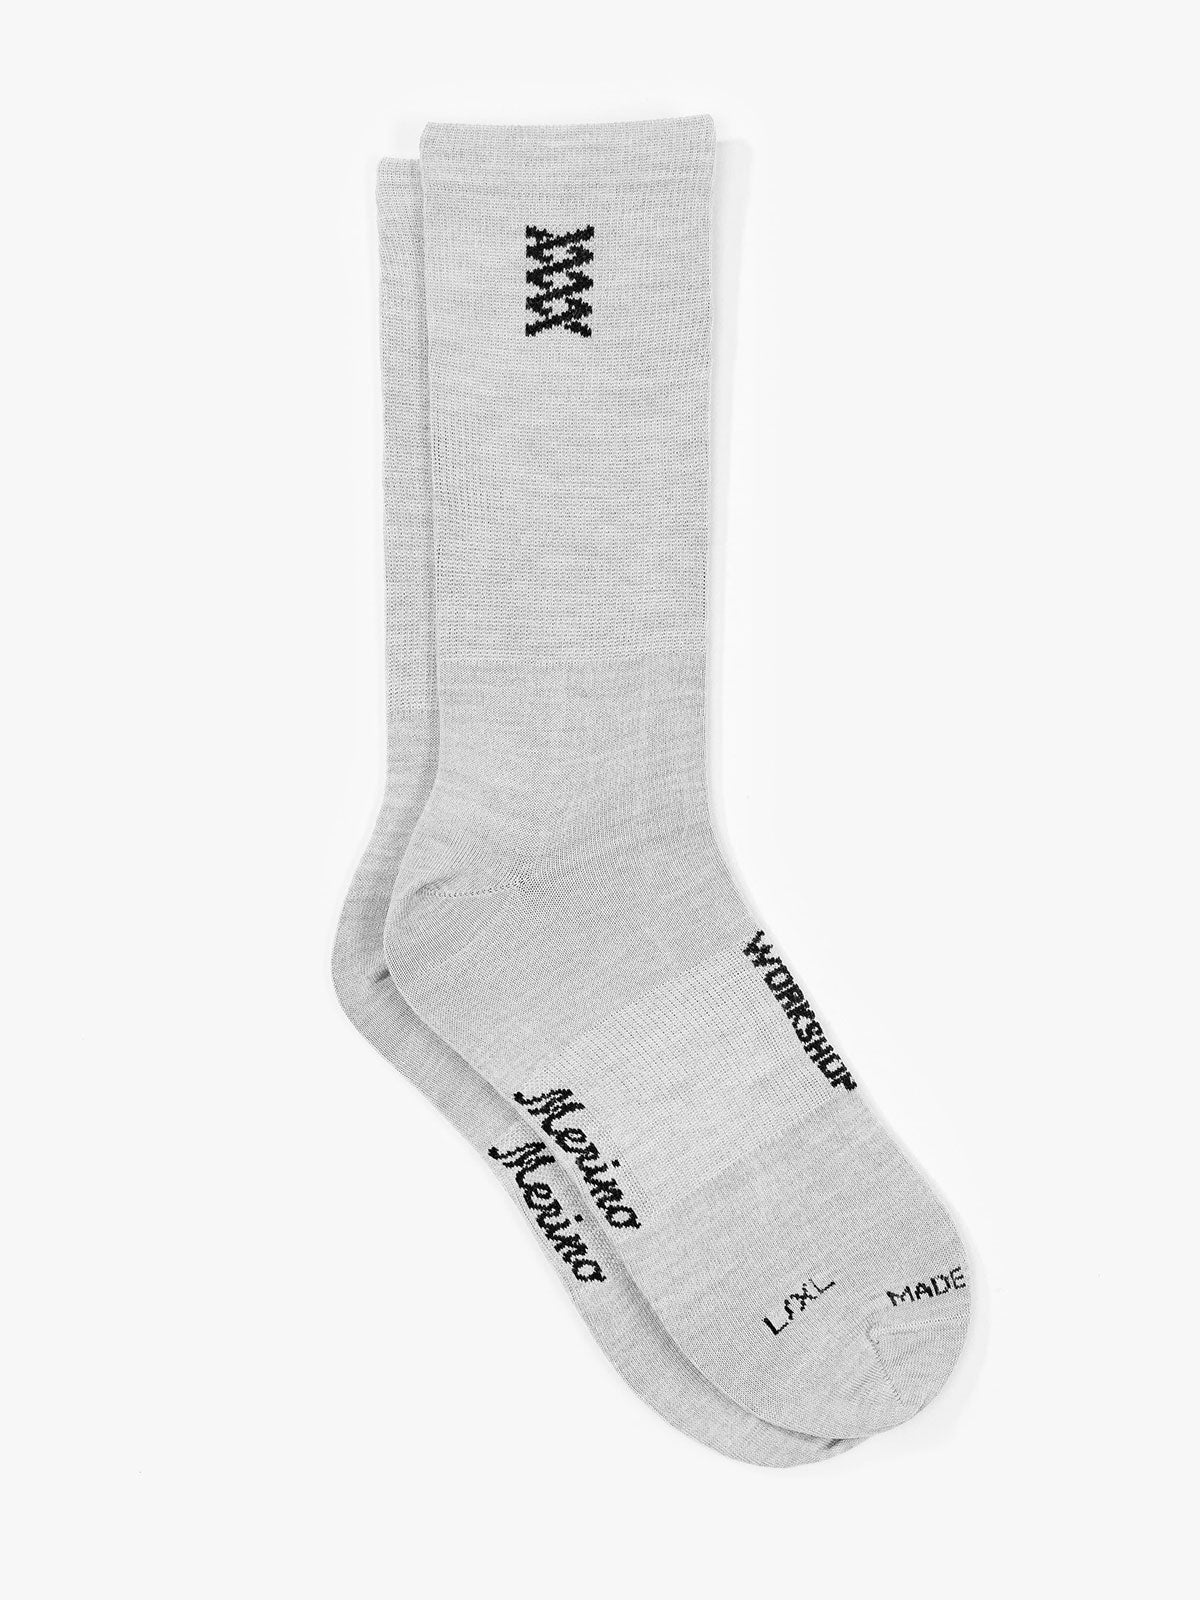 Mission Pro Wool Socks by Mission Workshop - Säänkestävät laukut ja tekniset vaatteet - San Francisco & Los Angeles - Rakennettu kestämään - ikuinen takuu